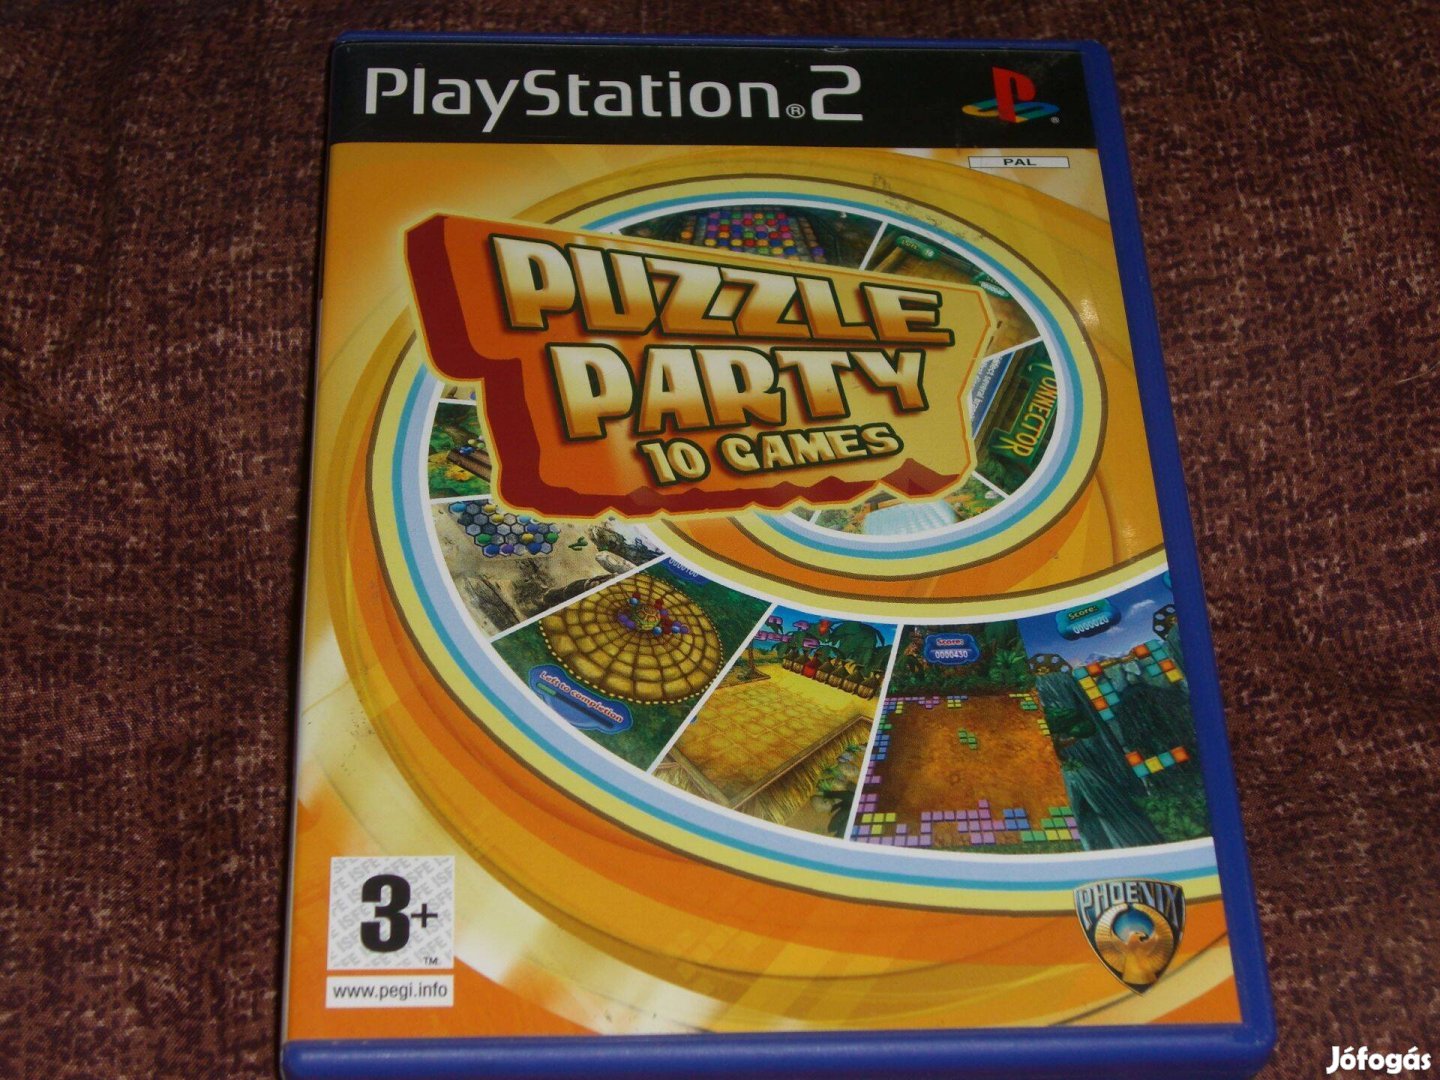 Puzzle Party 10 Games Playstation 2 eredeti lemez ( 4000 Ft )